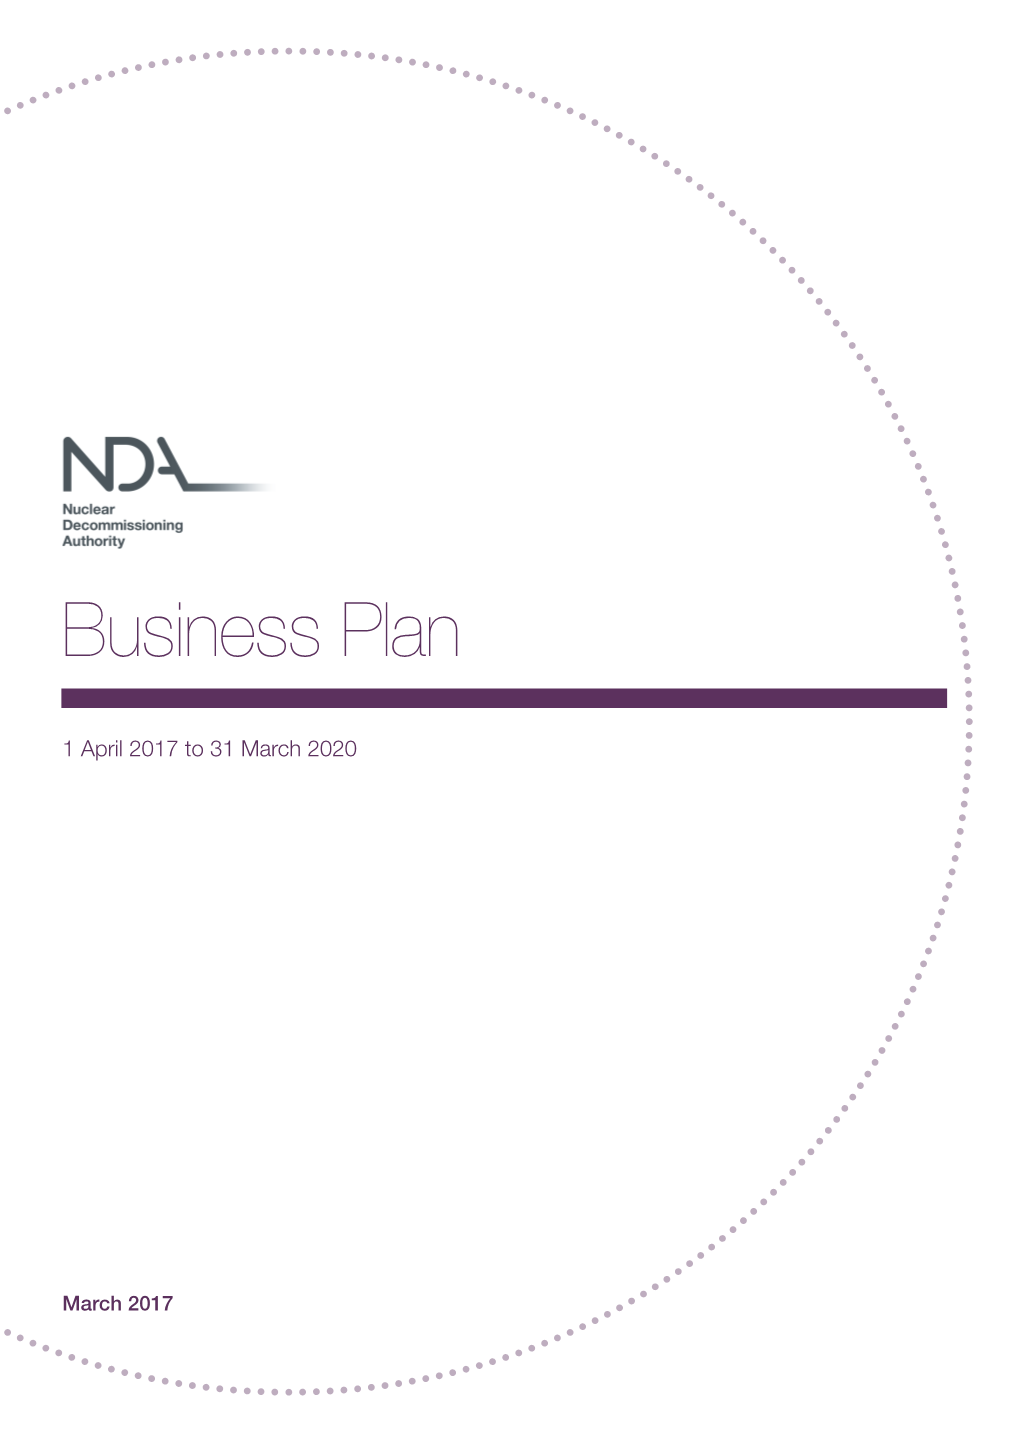 NDA - Business Plan 2017 to 2020